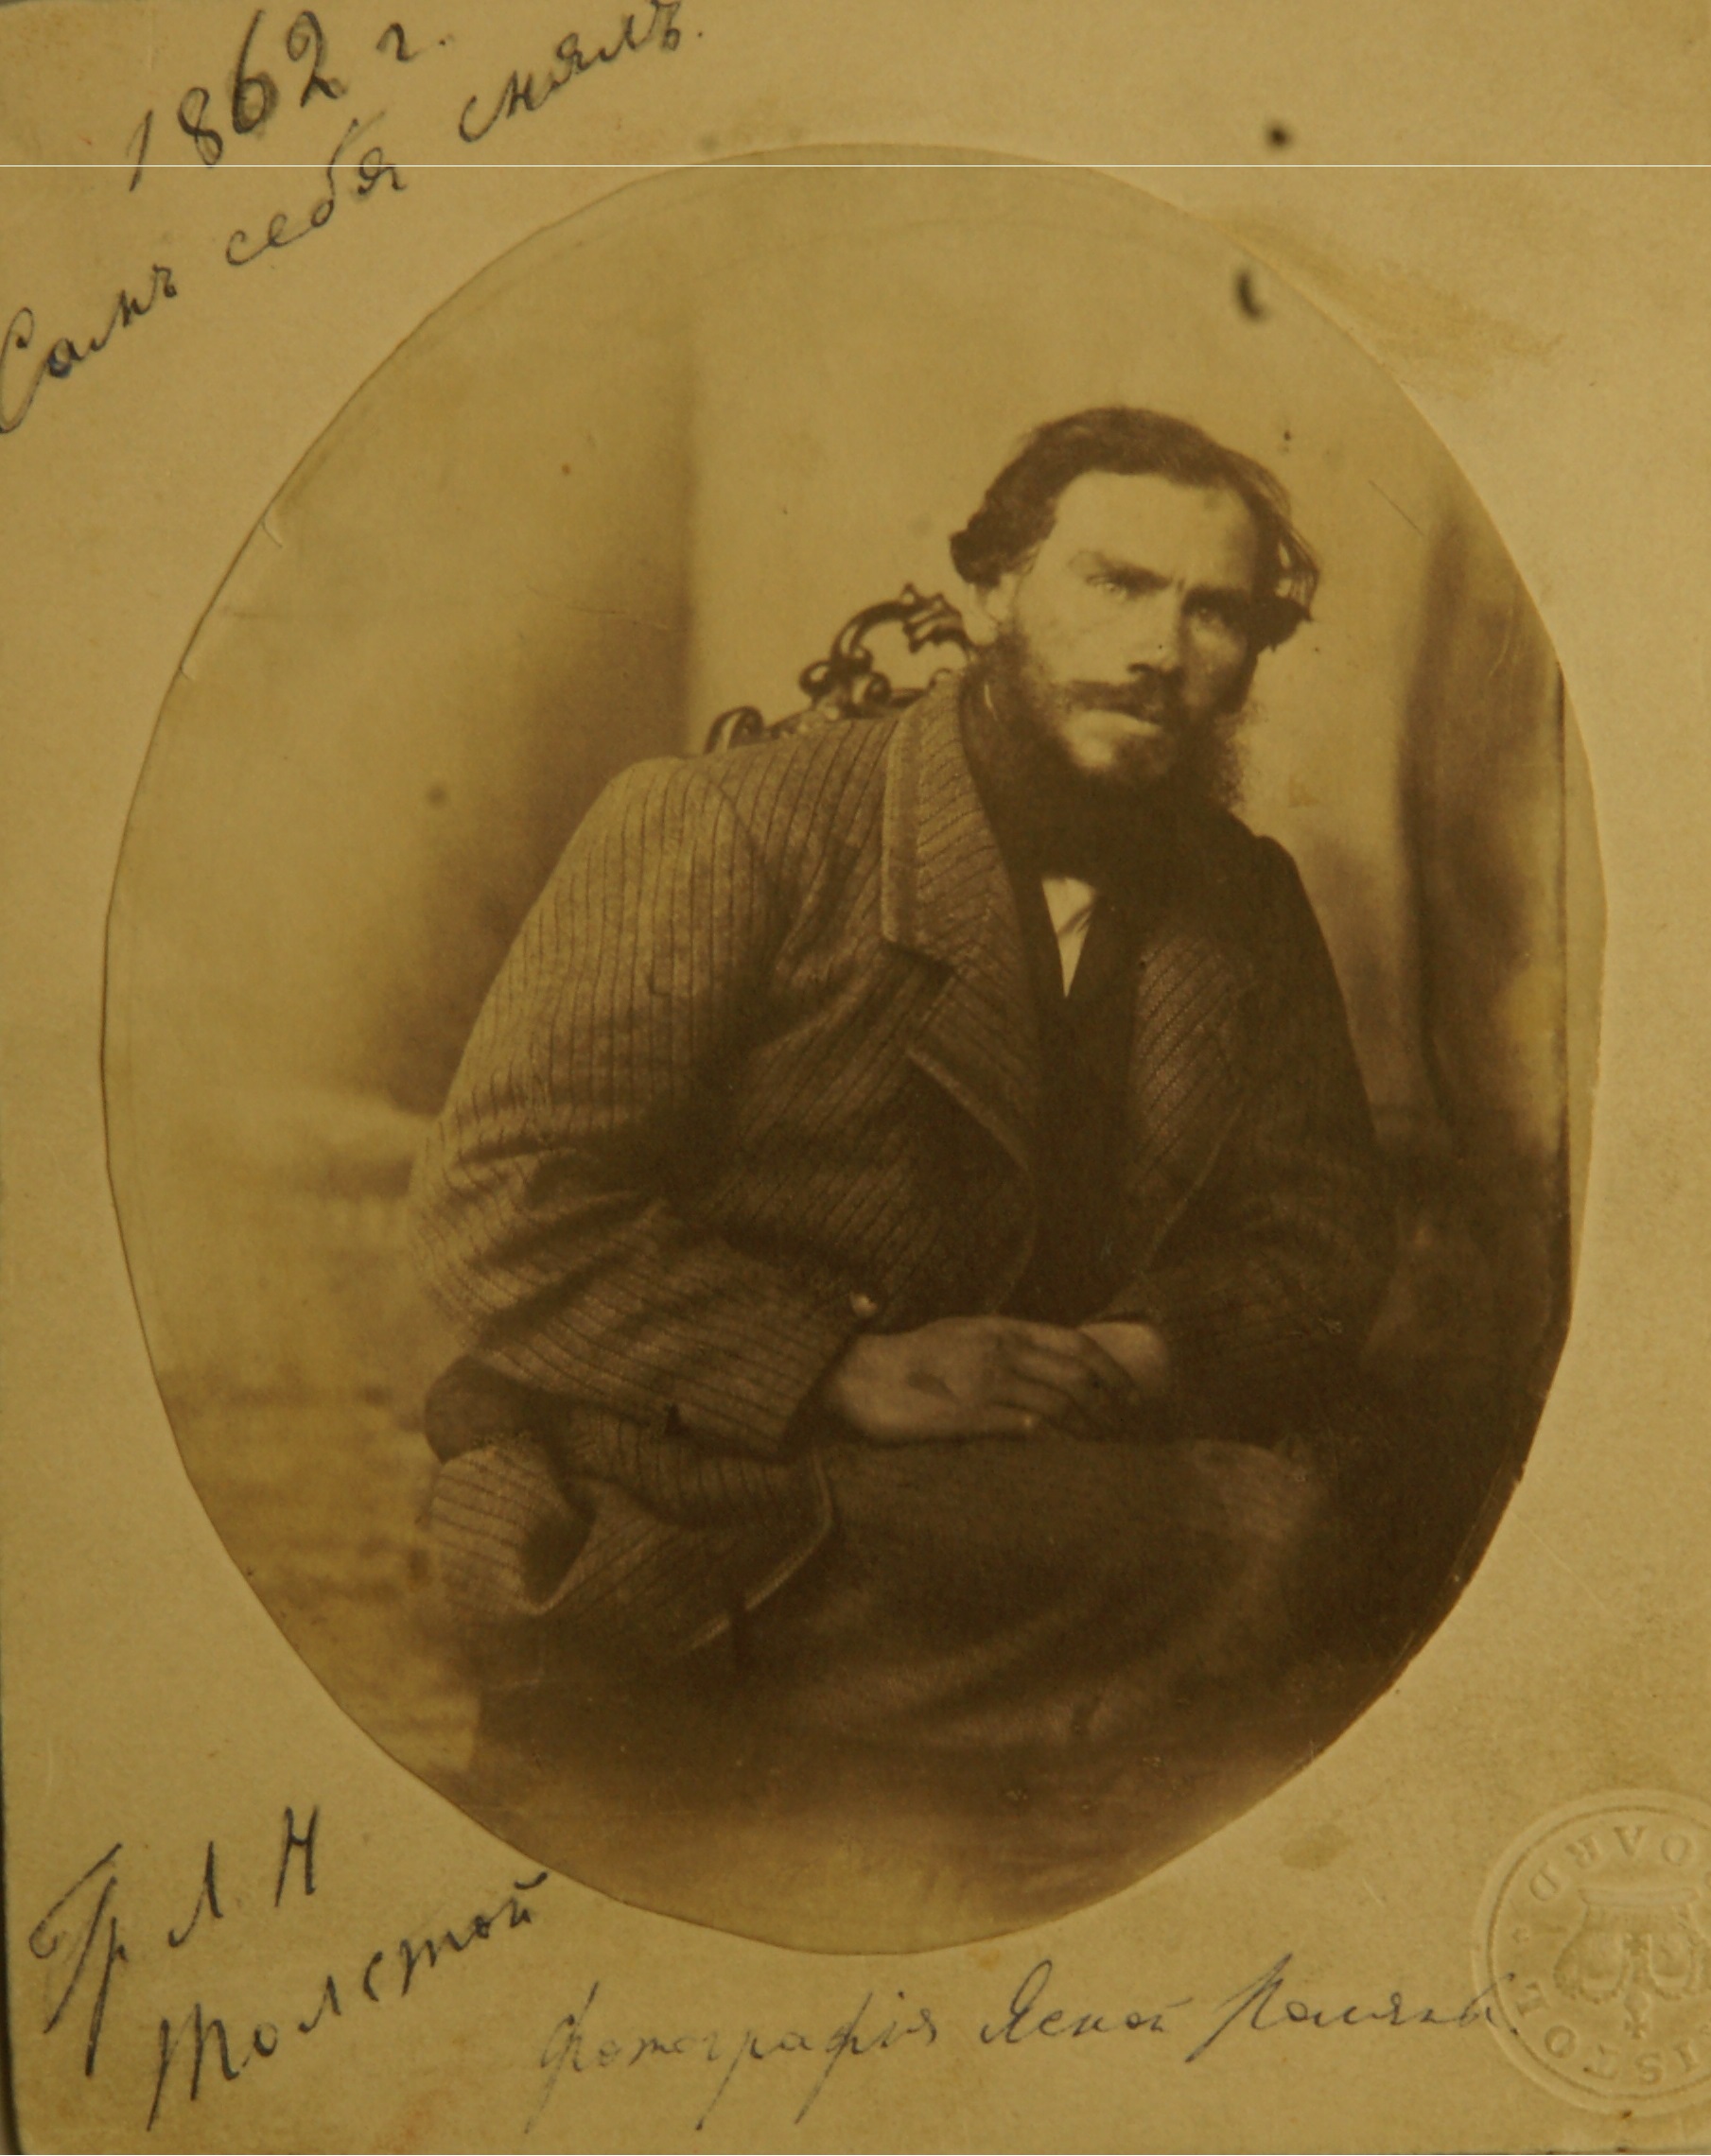 Cuando creció la popularidad de Tolstói, también se le hicieron más fotos. Corresponsales rusos y extranjeros estaban interesados en fotografiar al escritor. Lev Tolstói, Fotografía de mí mismo, 1862.